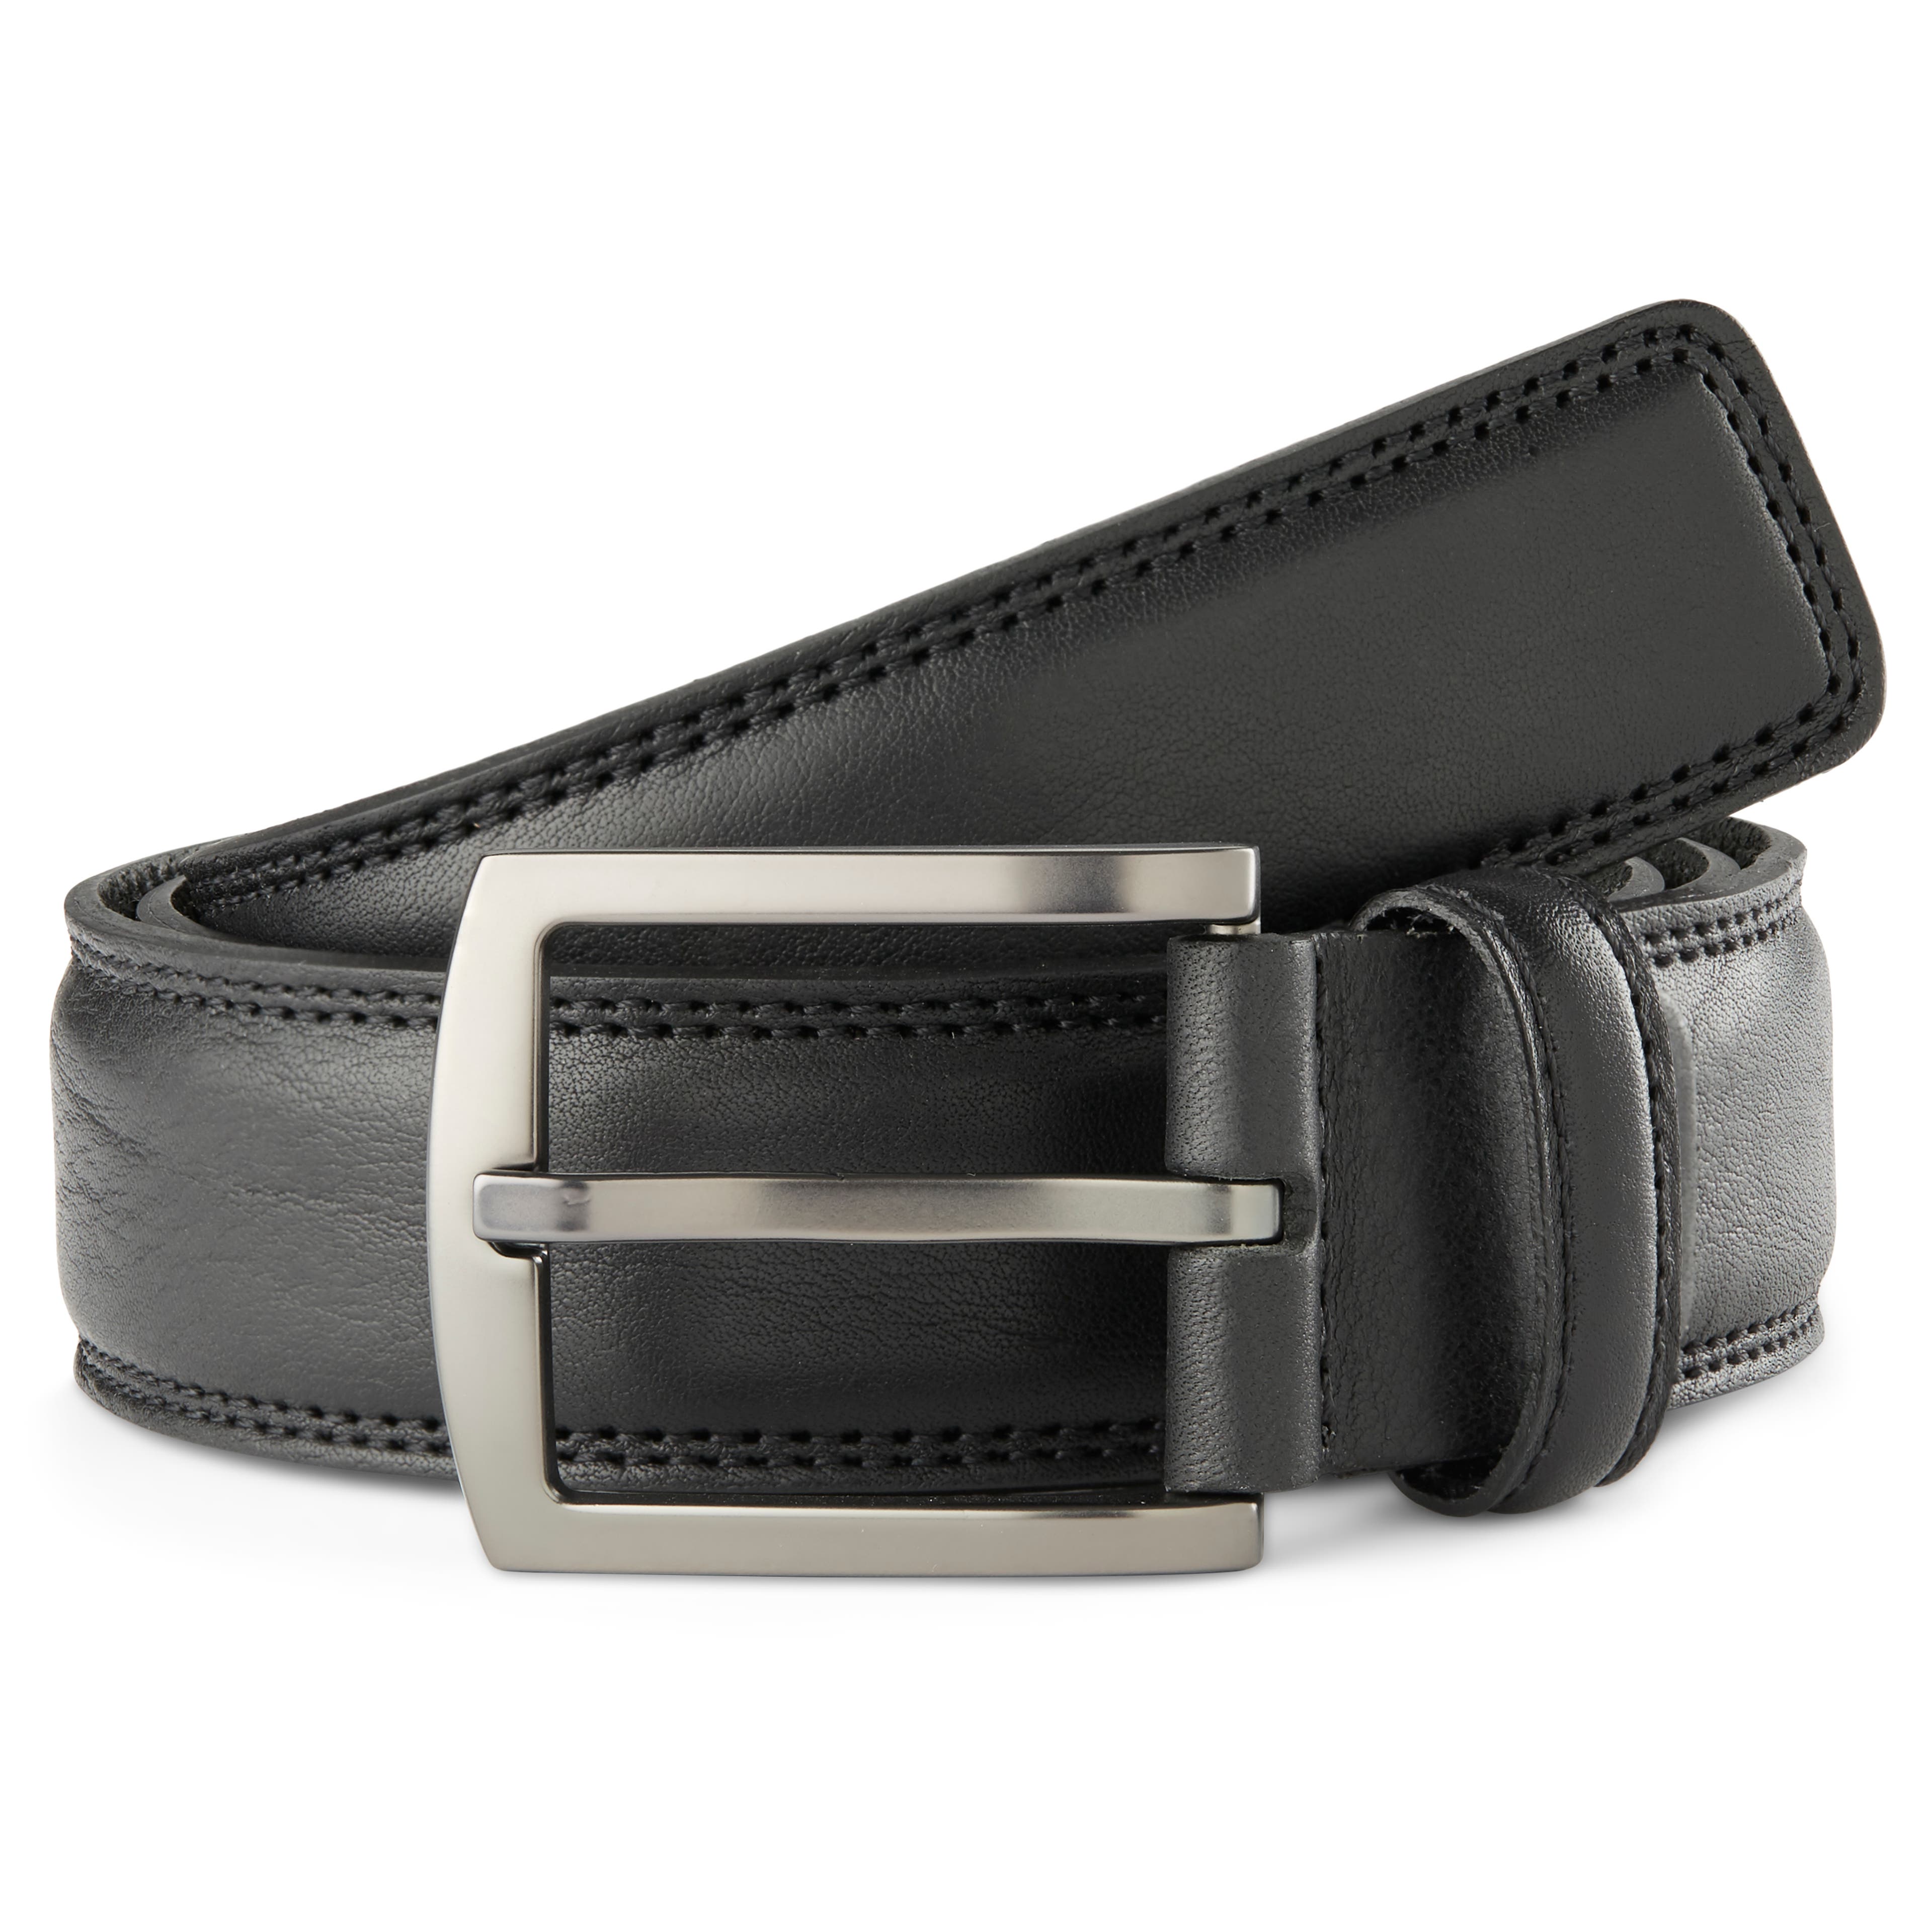 Cinturón clásico de cuero negro con hebilla plateada